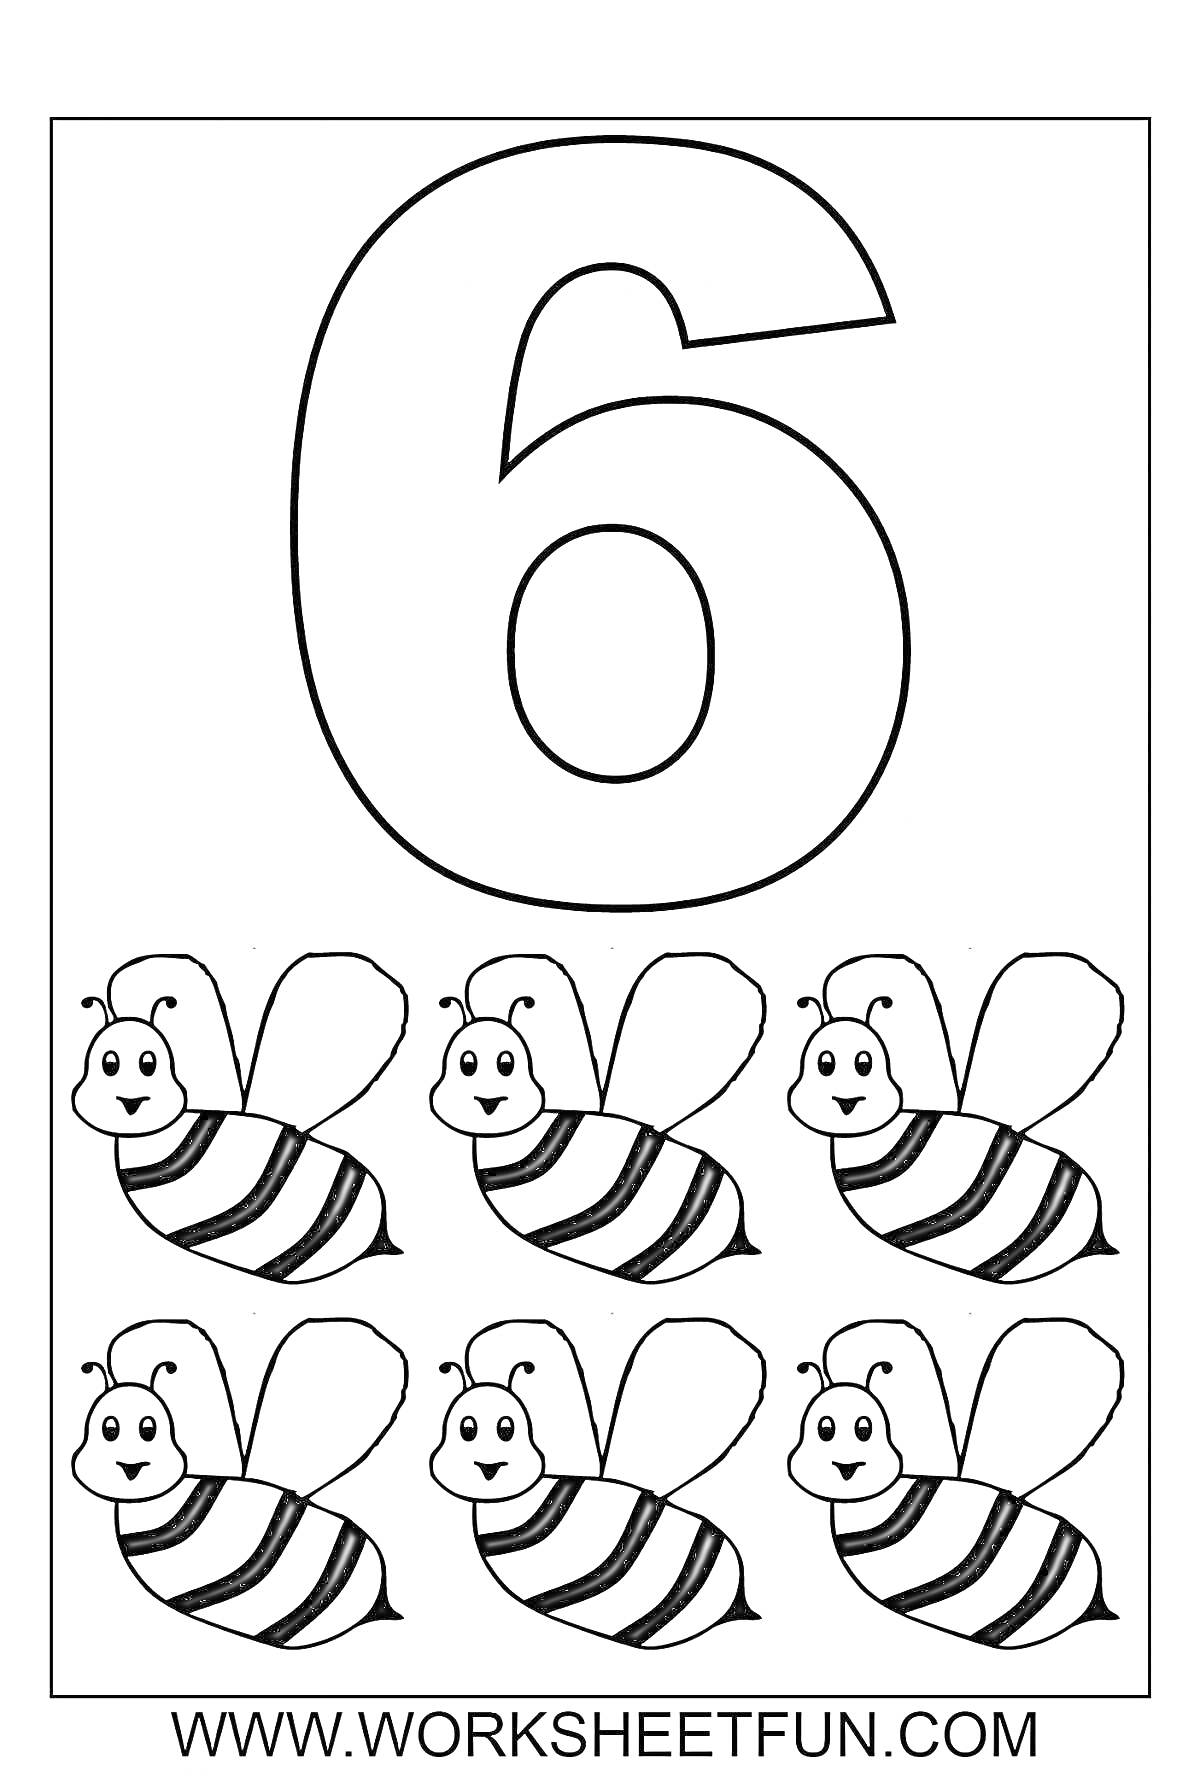 Раскраска цифра 6 и шесть пчелок